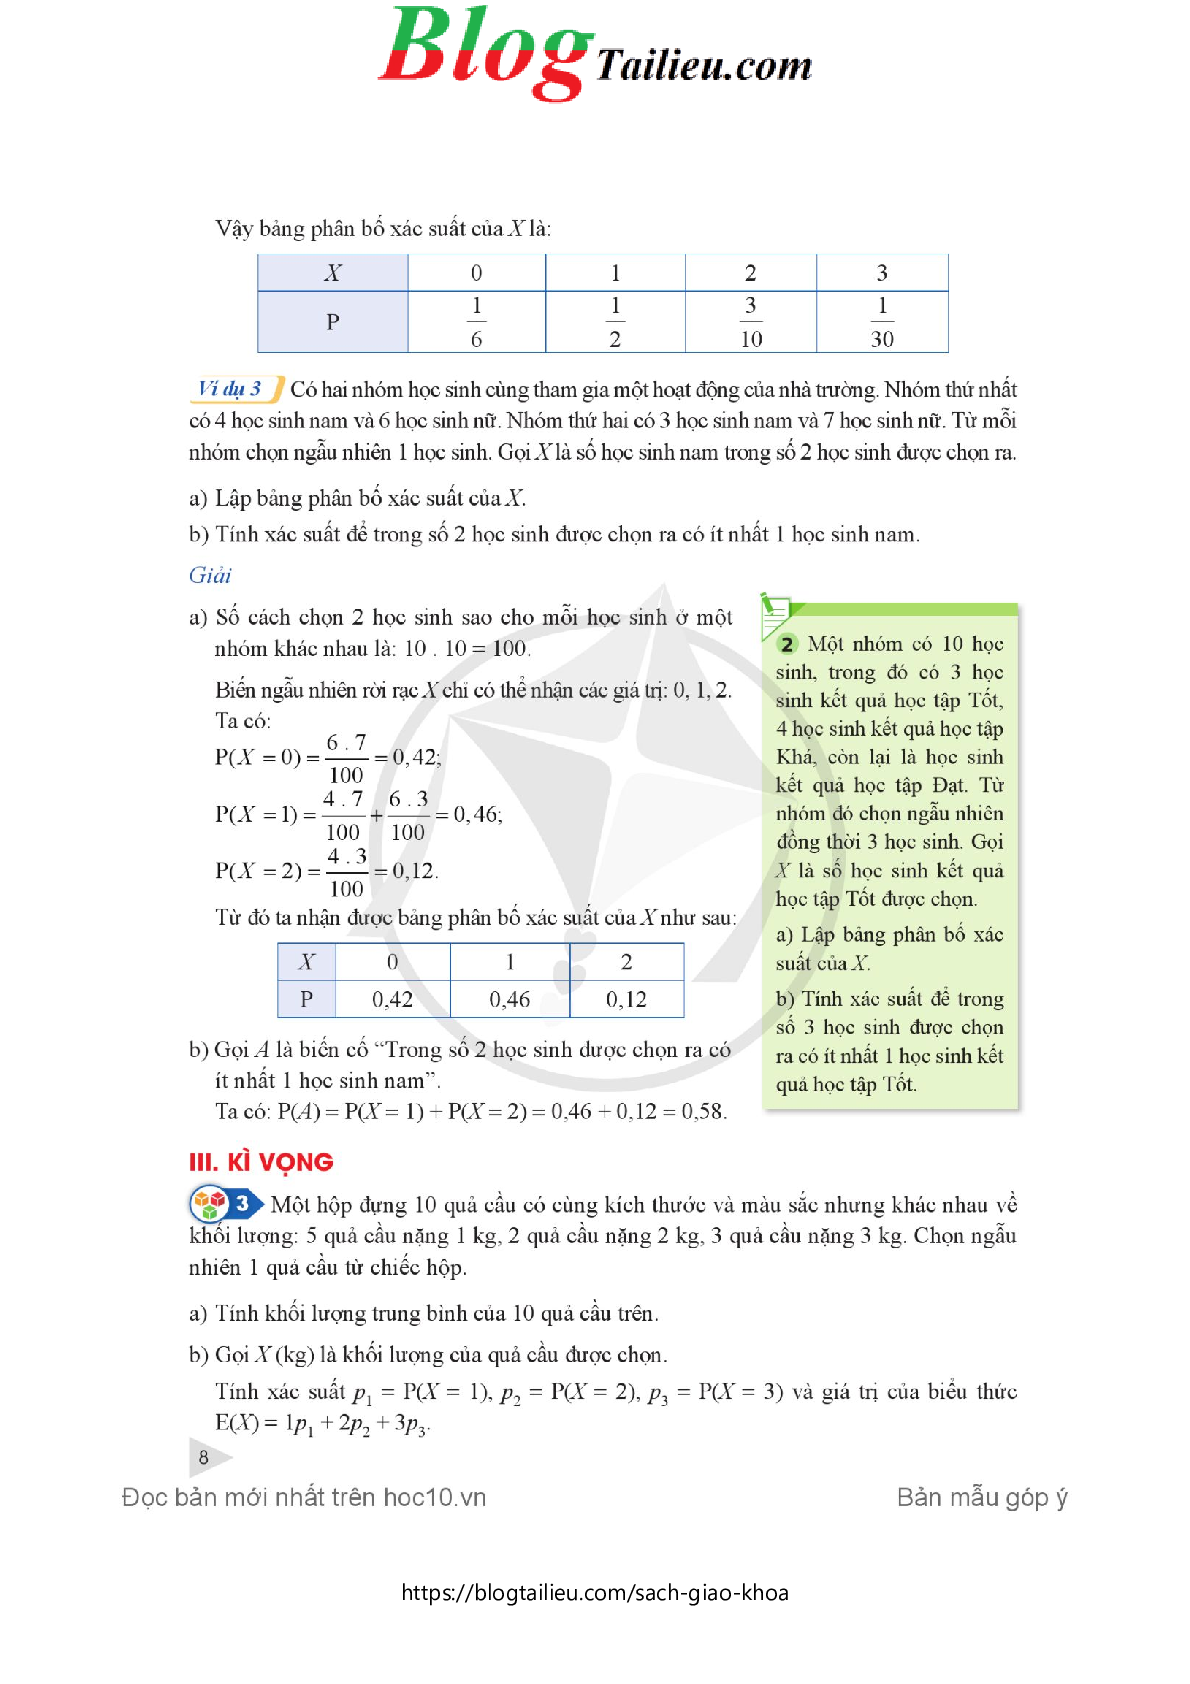 Chuyên đề học tập Toán 12 Cánh diều pdf (trang 10)